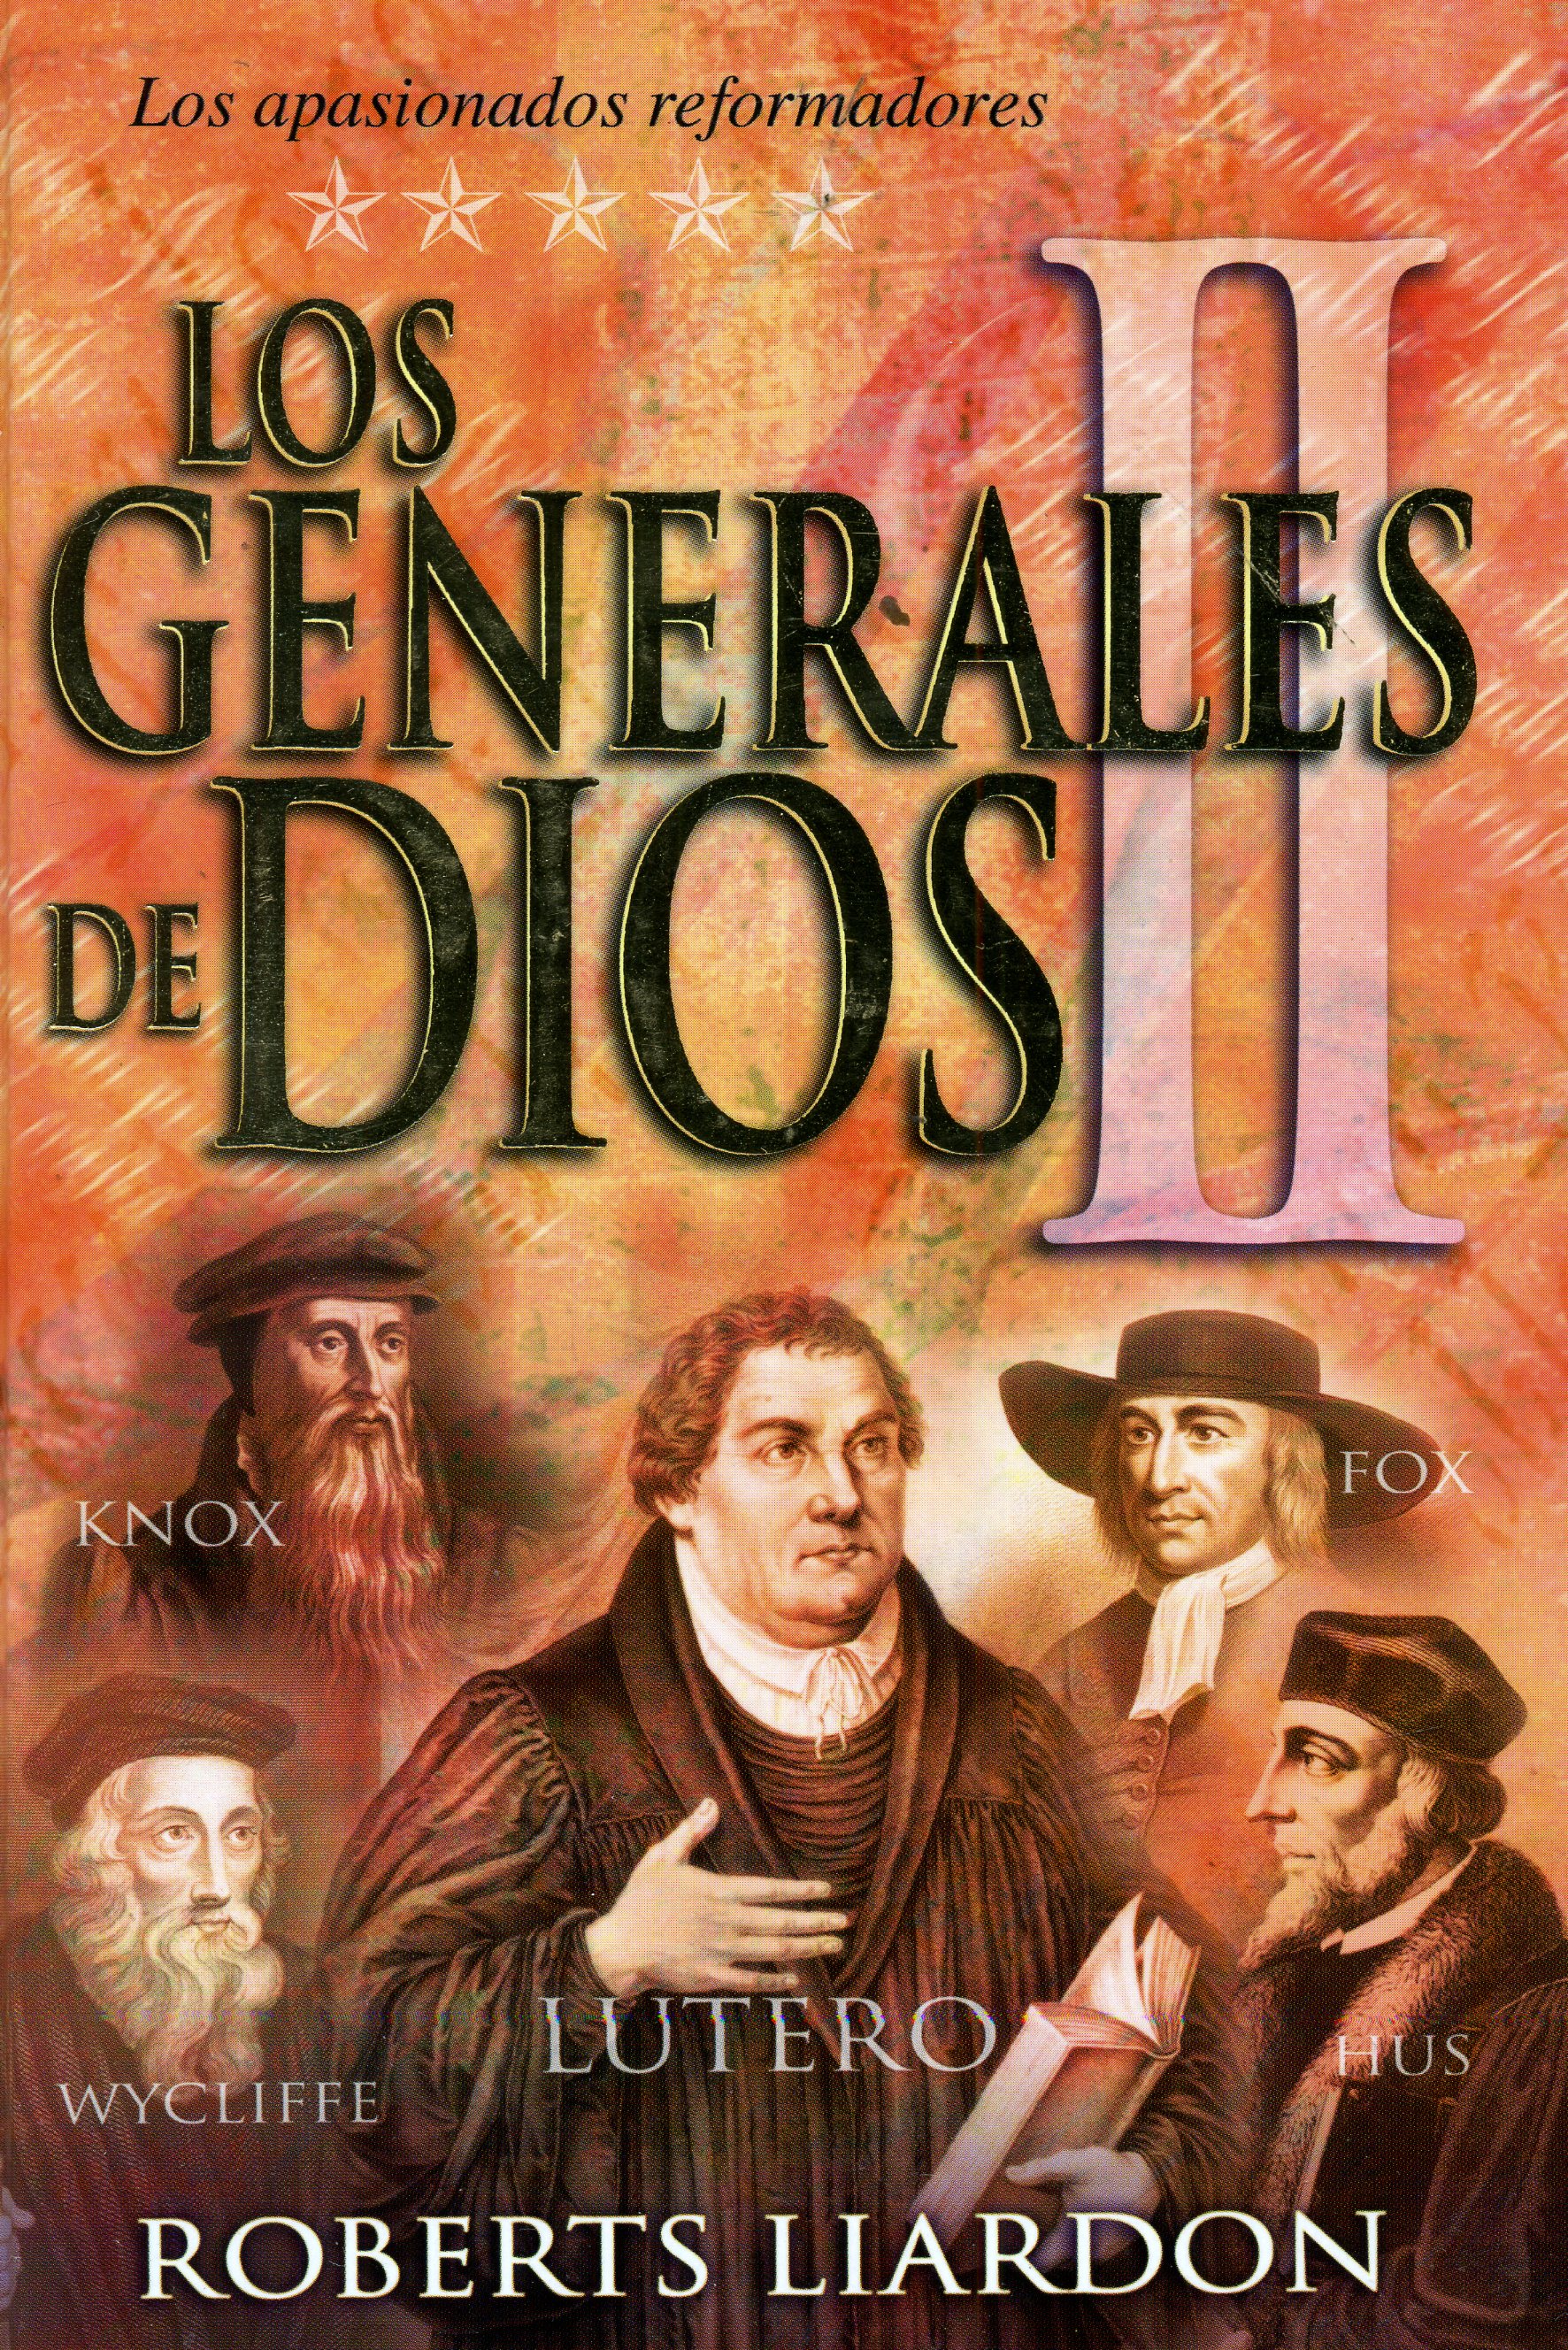 Los Generales De Dios Vol. 2